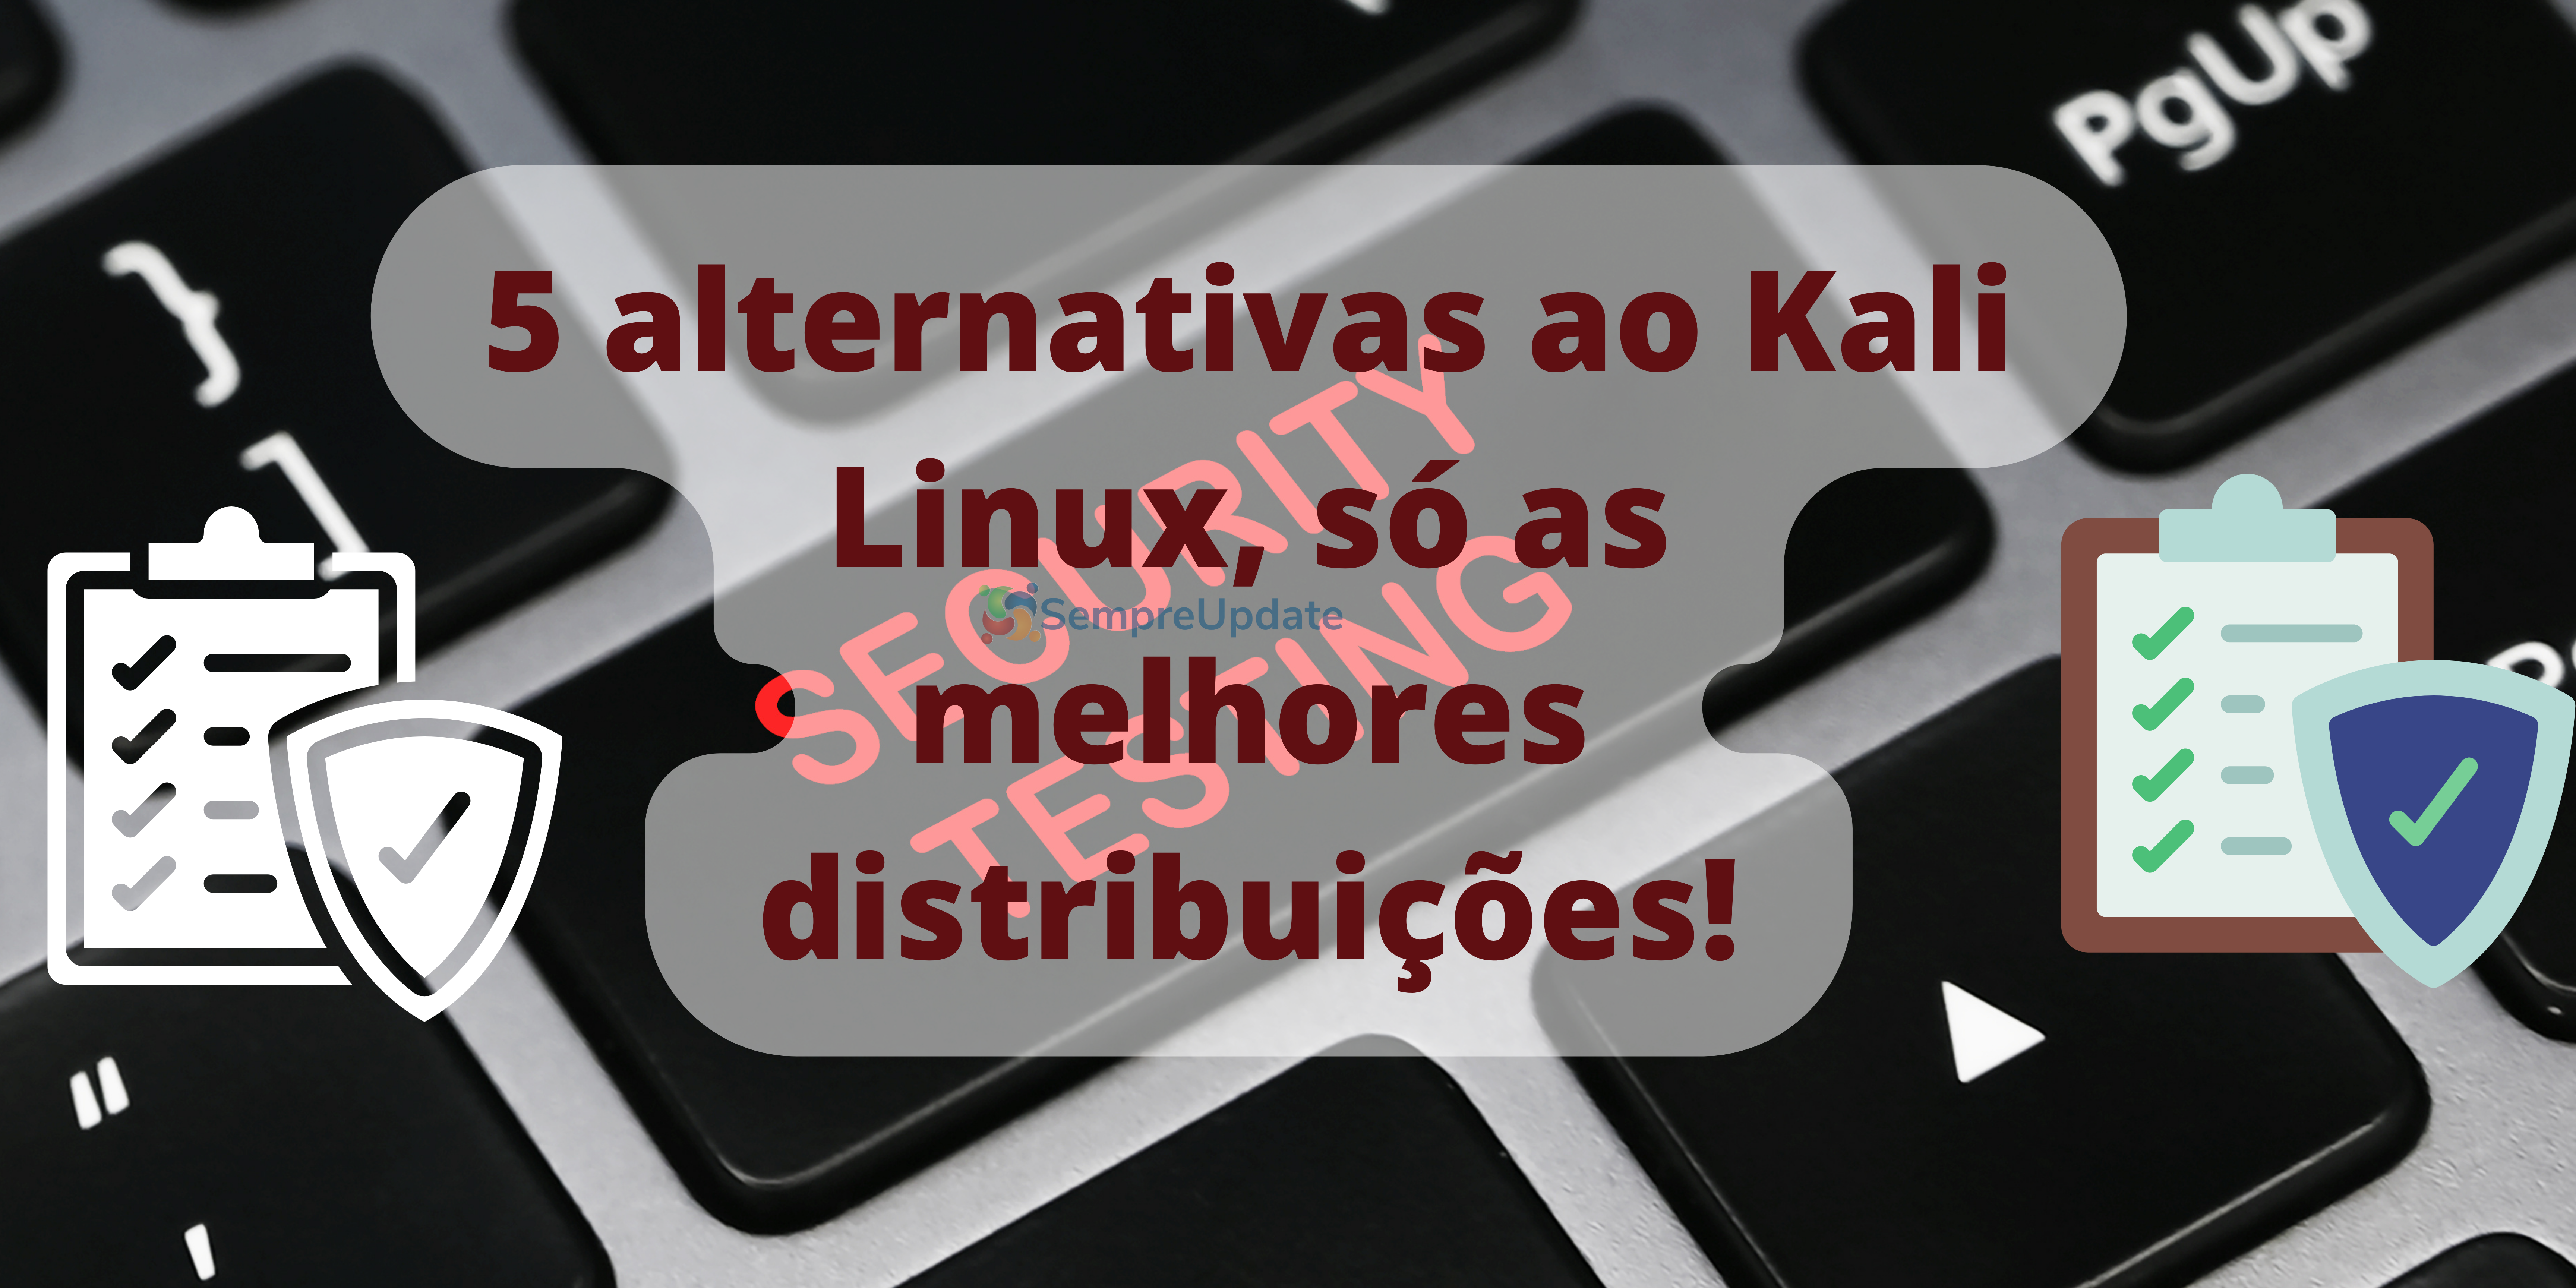 5 alternativas ao Kali Linux, só as melhores distribuições!